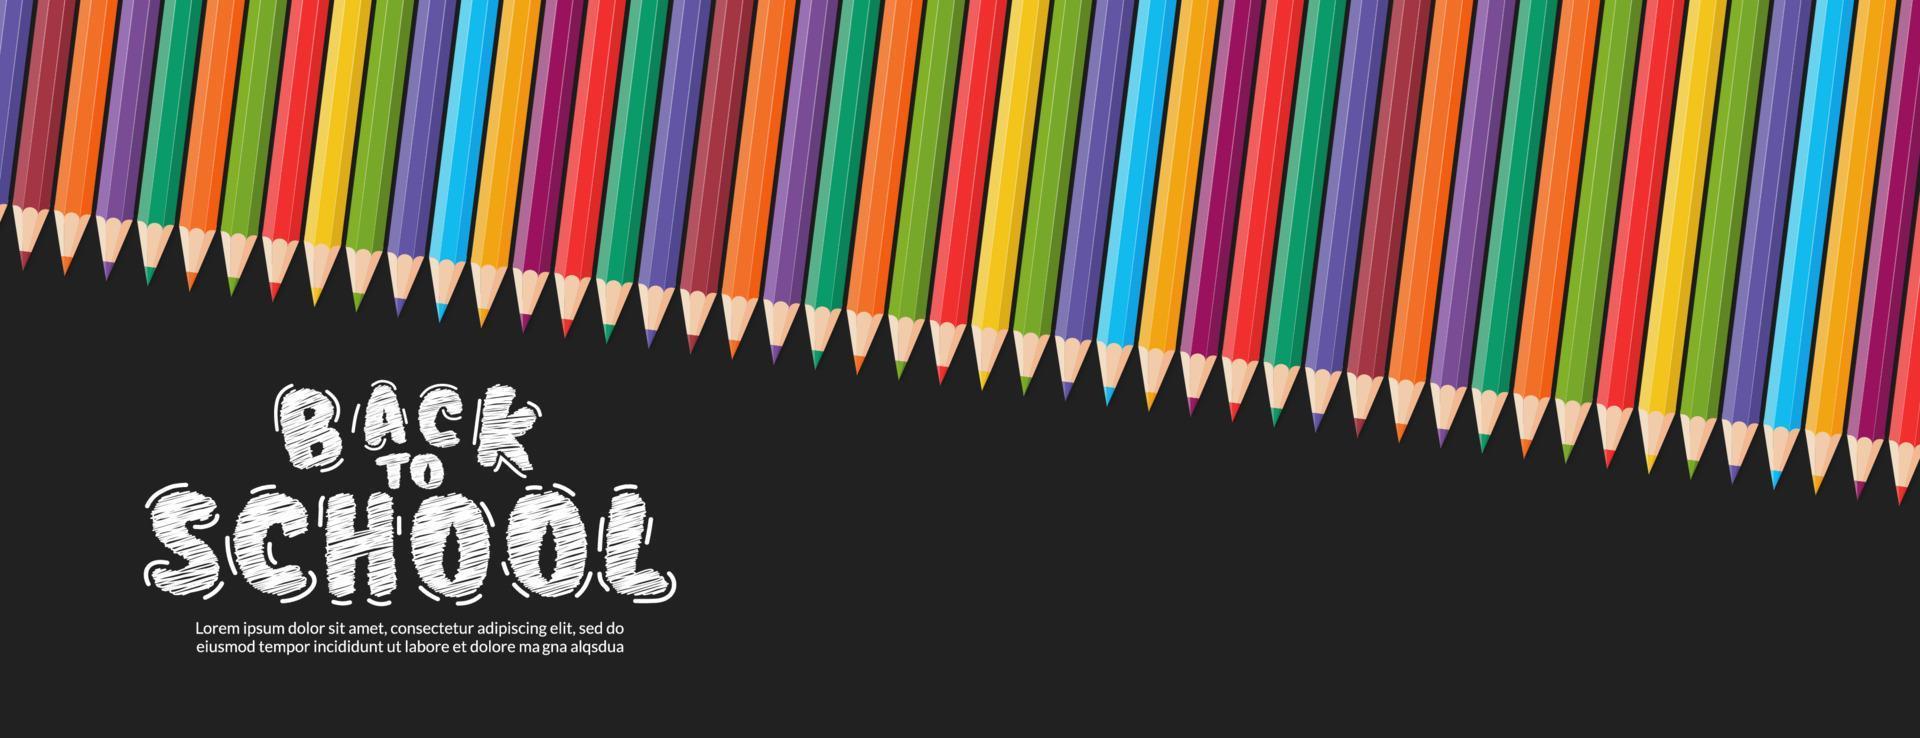 Fondo de diseño vectorial de lápices de colores, concepto de regreso a la escuela con pancarta de crayones coloridos vector